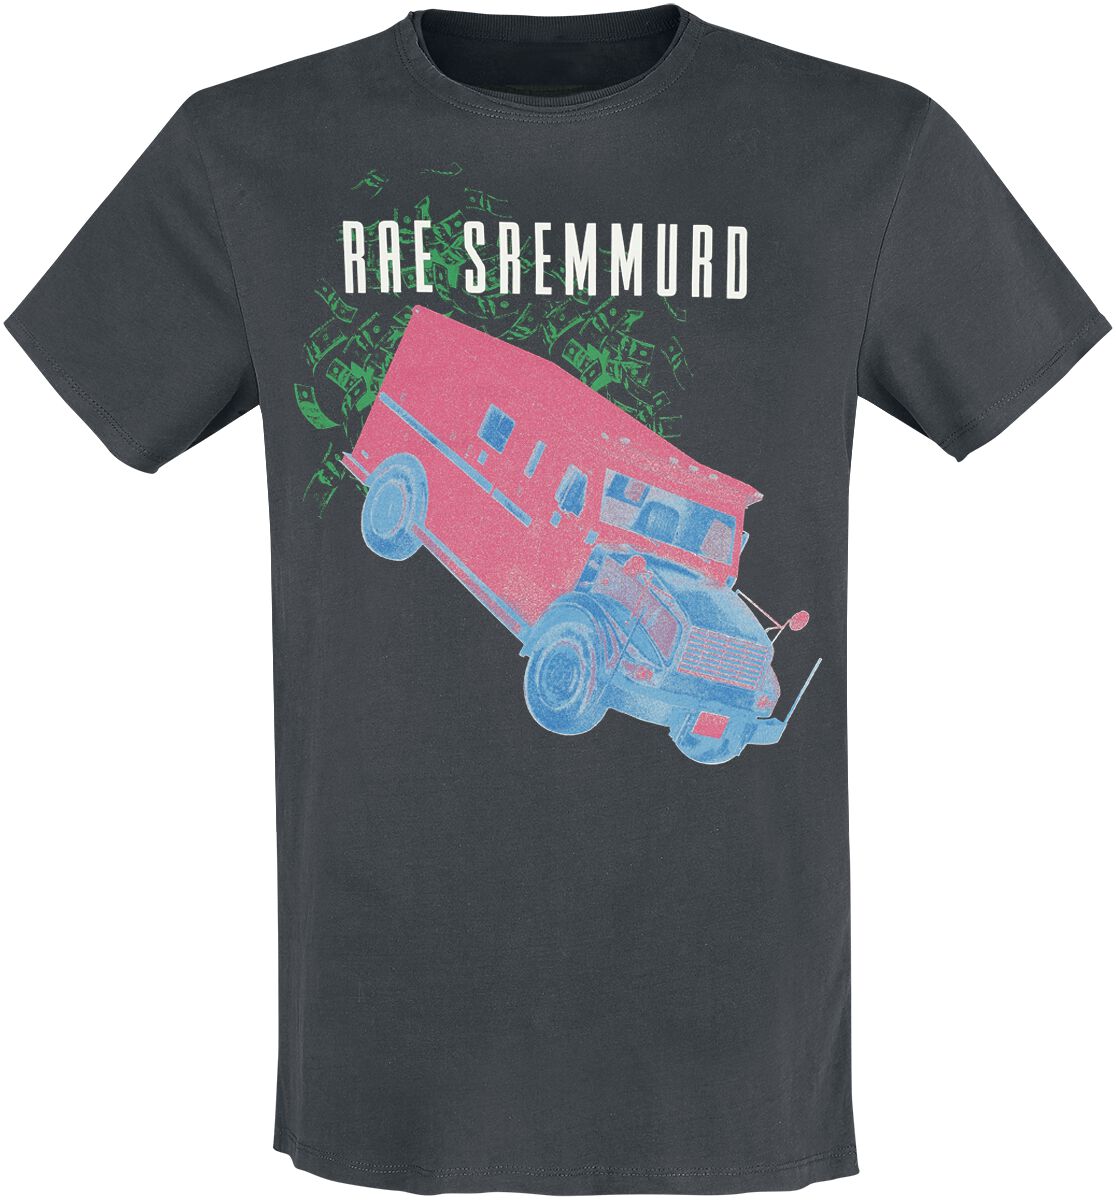 Rae Sremmurd T-Shirt - Amplified Collection - Cash Heist - S bis 3XL - für Männer - Größe L - charcoal  - Lizenziertes Merchandise! von Rae Sremmurd